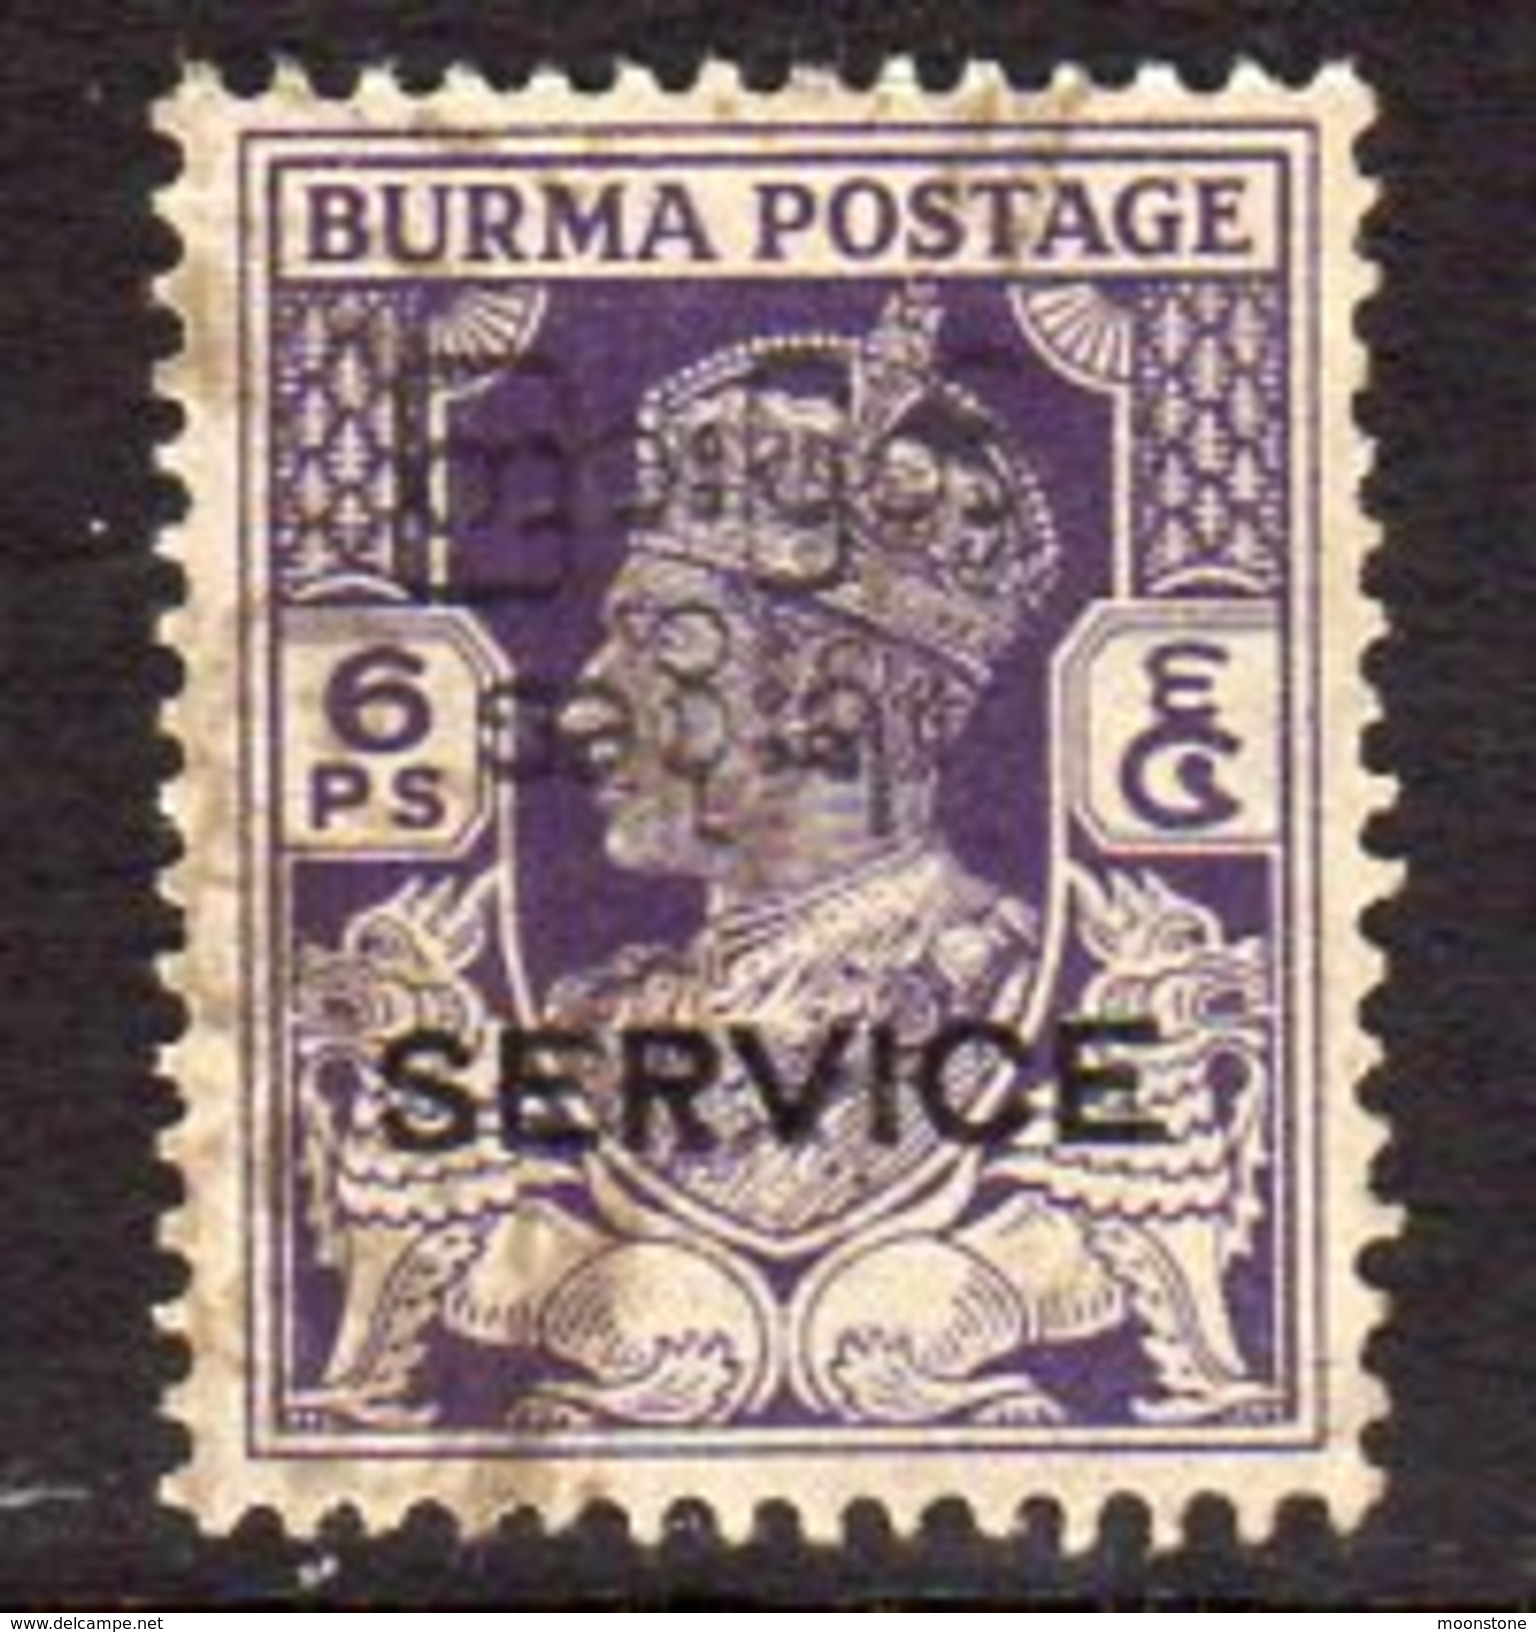 Burma GVI 1947 Interim Government SERVICE 6p. Value, Used, SG O42 (D) - Burma (...-1947)